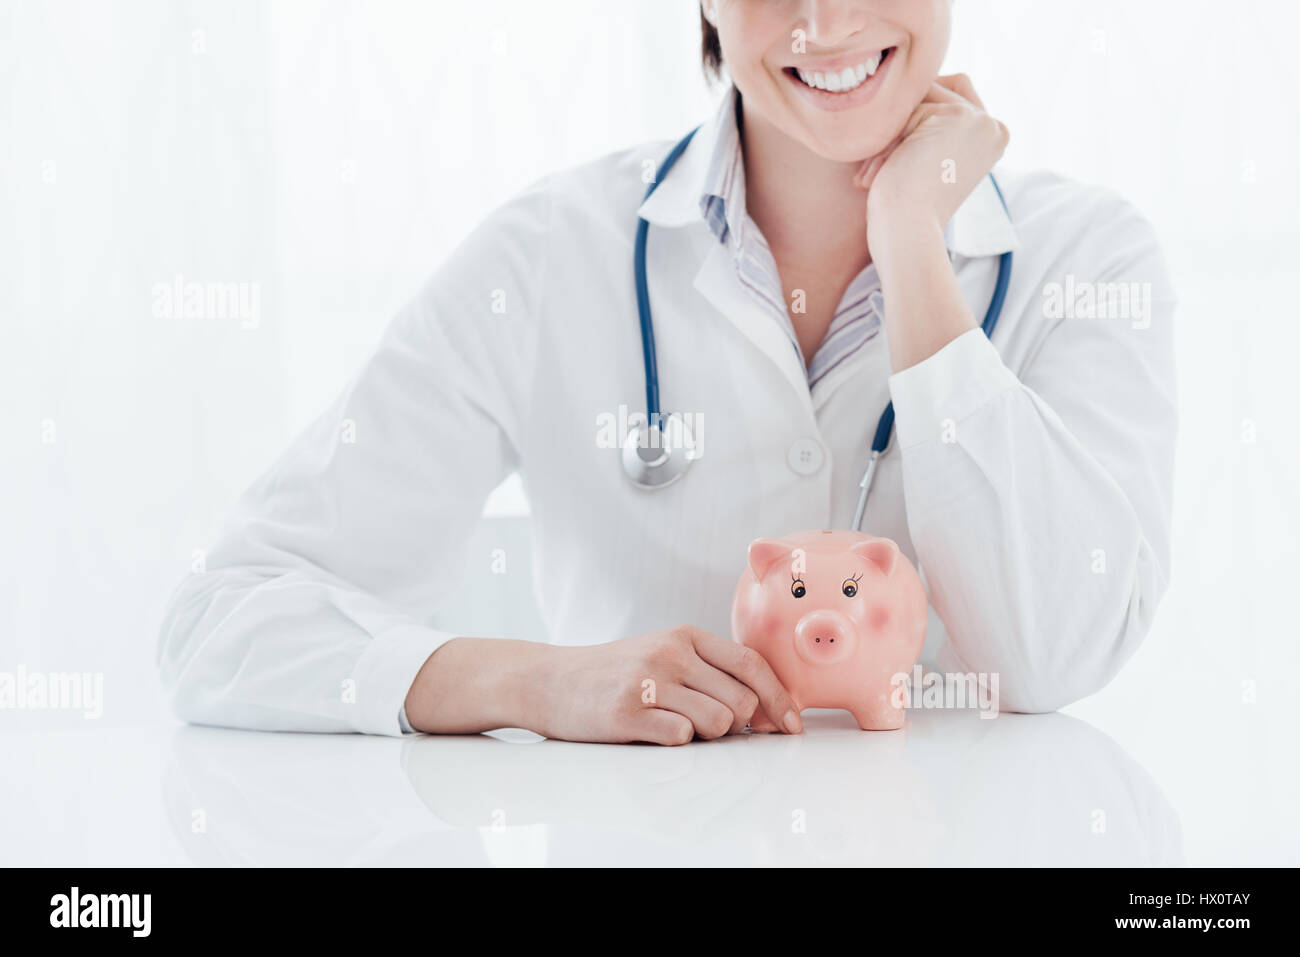 Femme médecin et tirelire : assurance santé, les frais médicaux et concept fiscal Banque D'Images